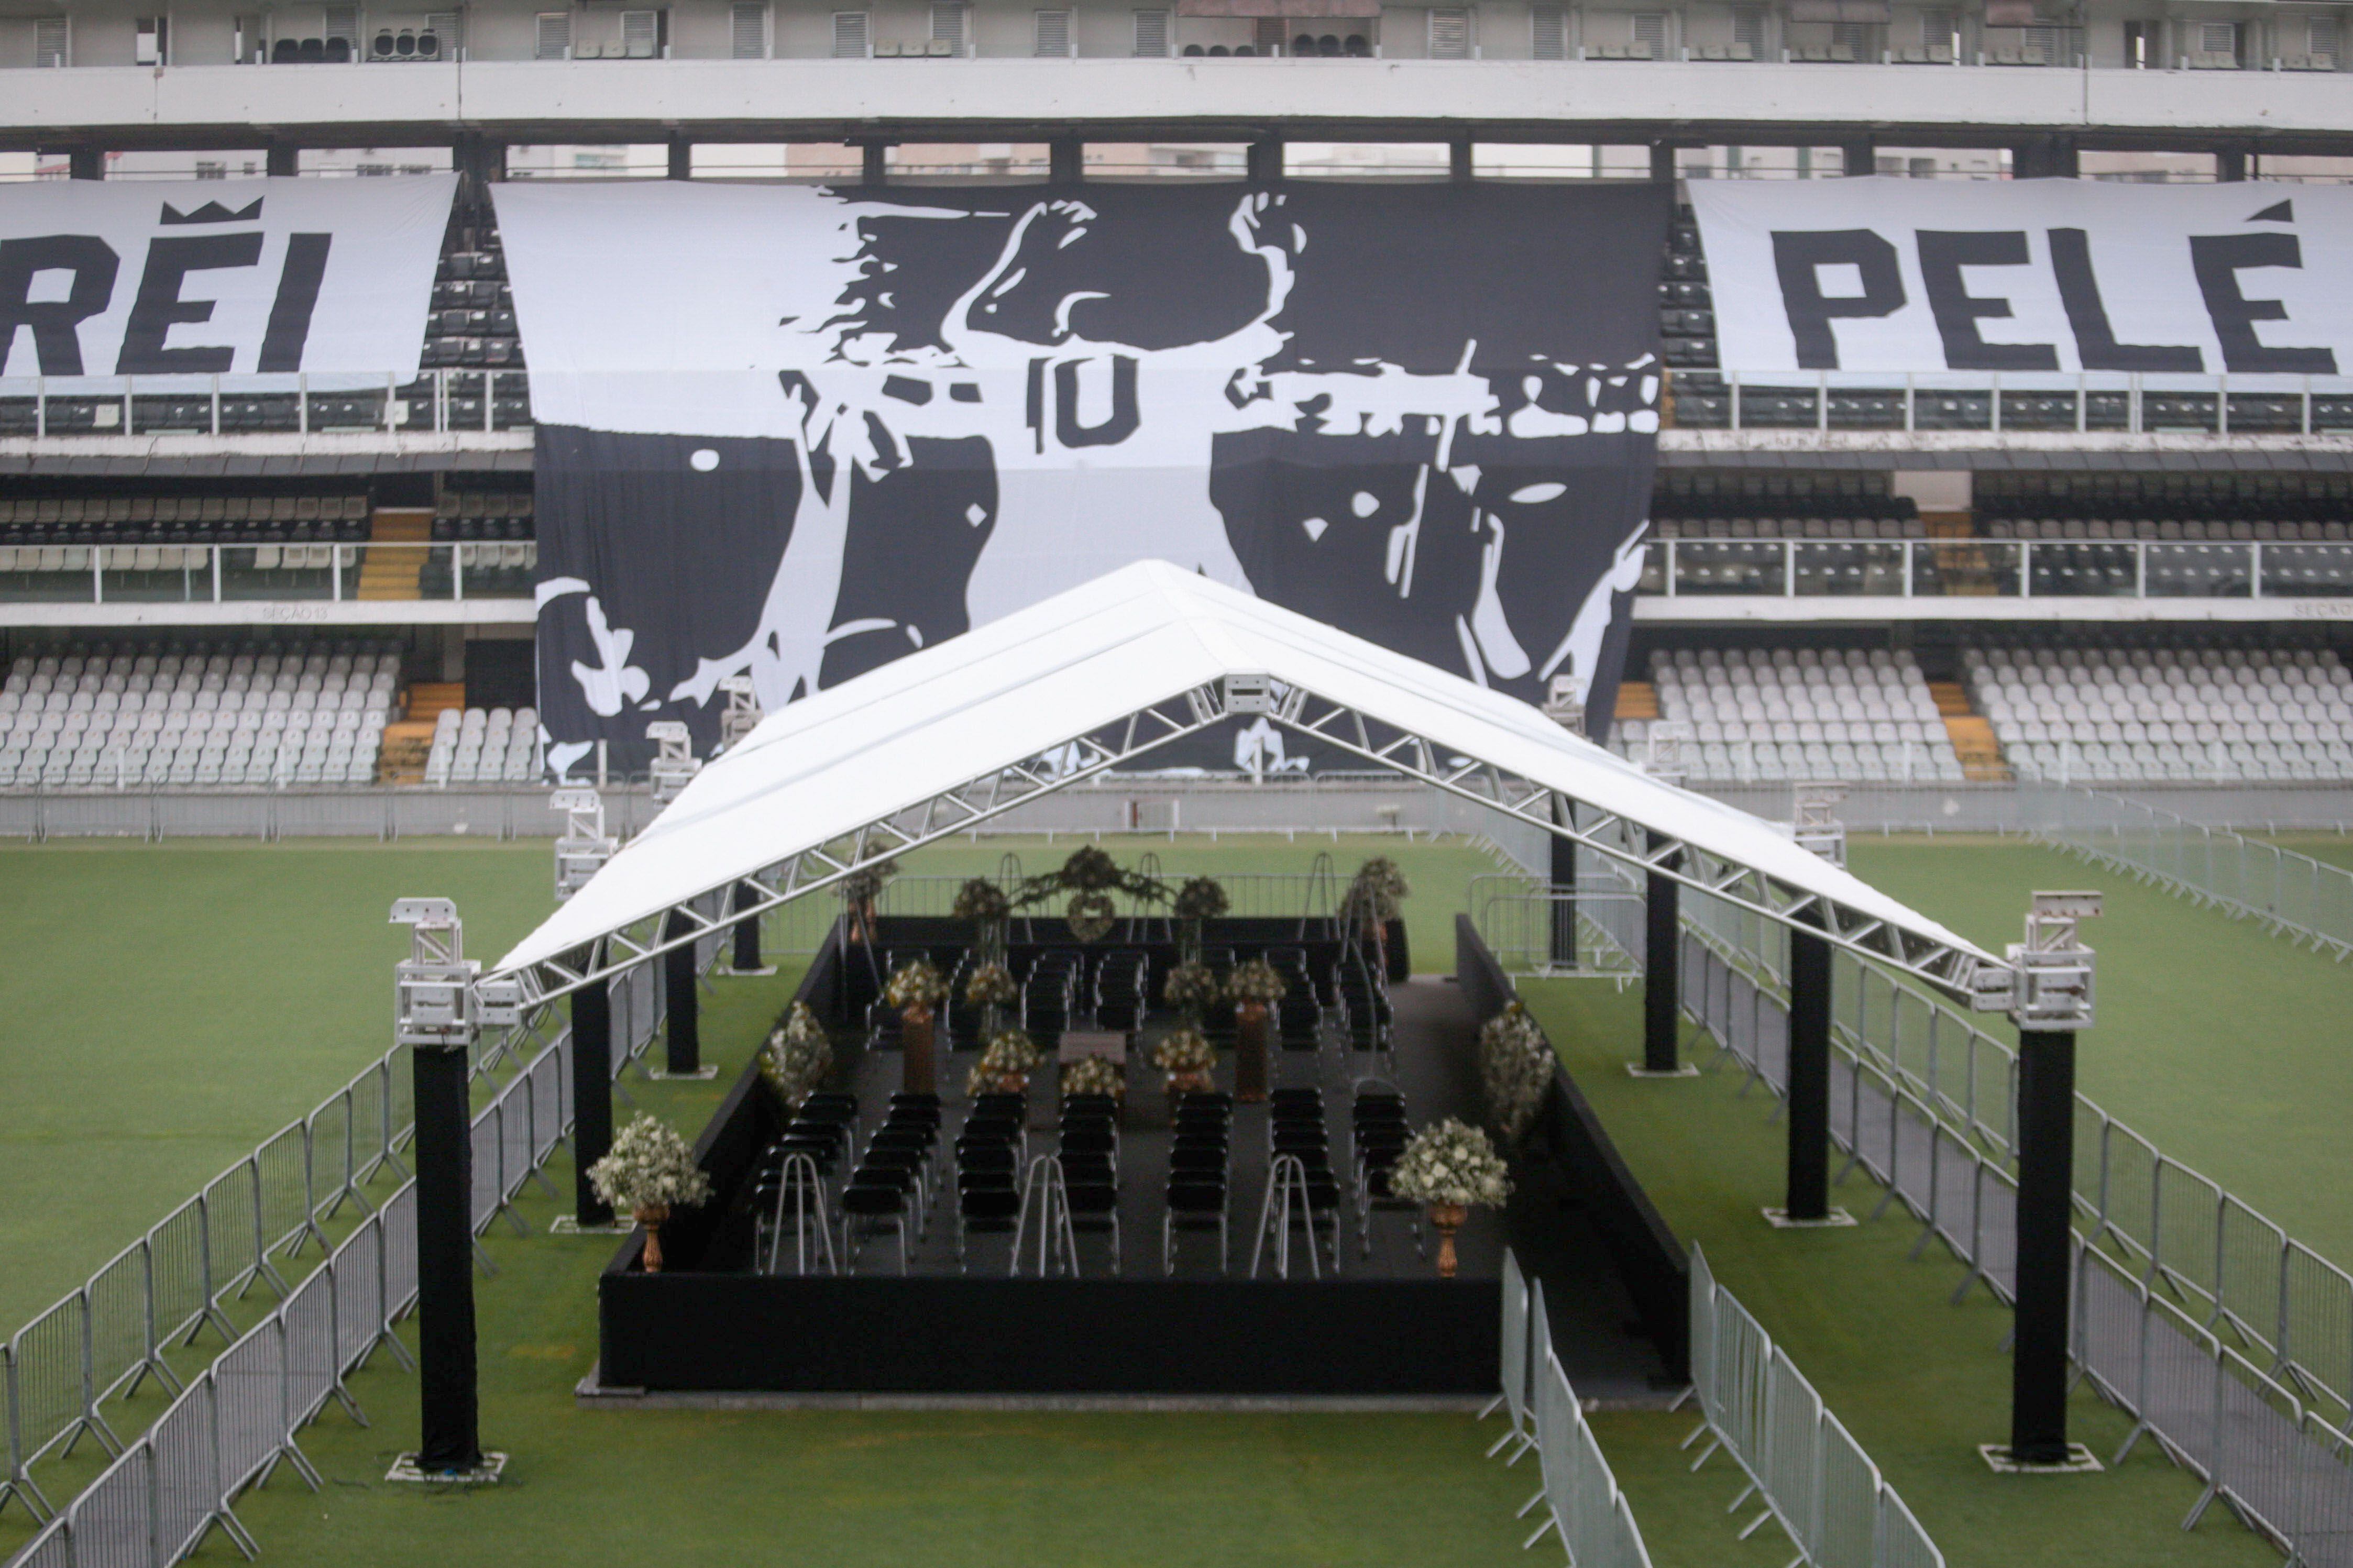 10 curiosidades sobre o Estádio Rei Pelé, a casa do futebol